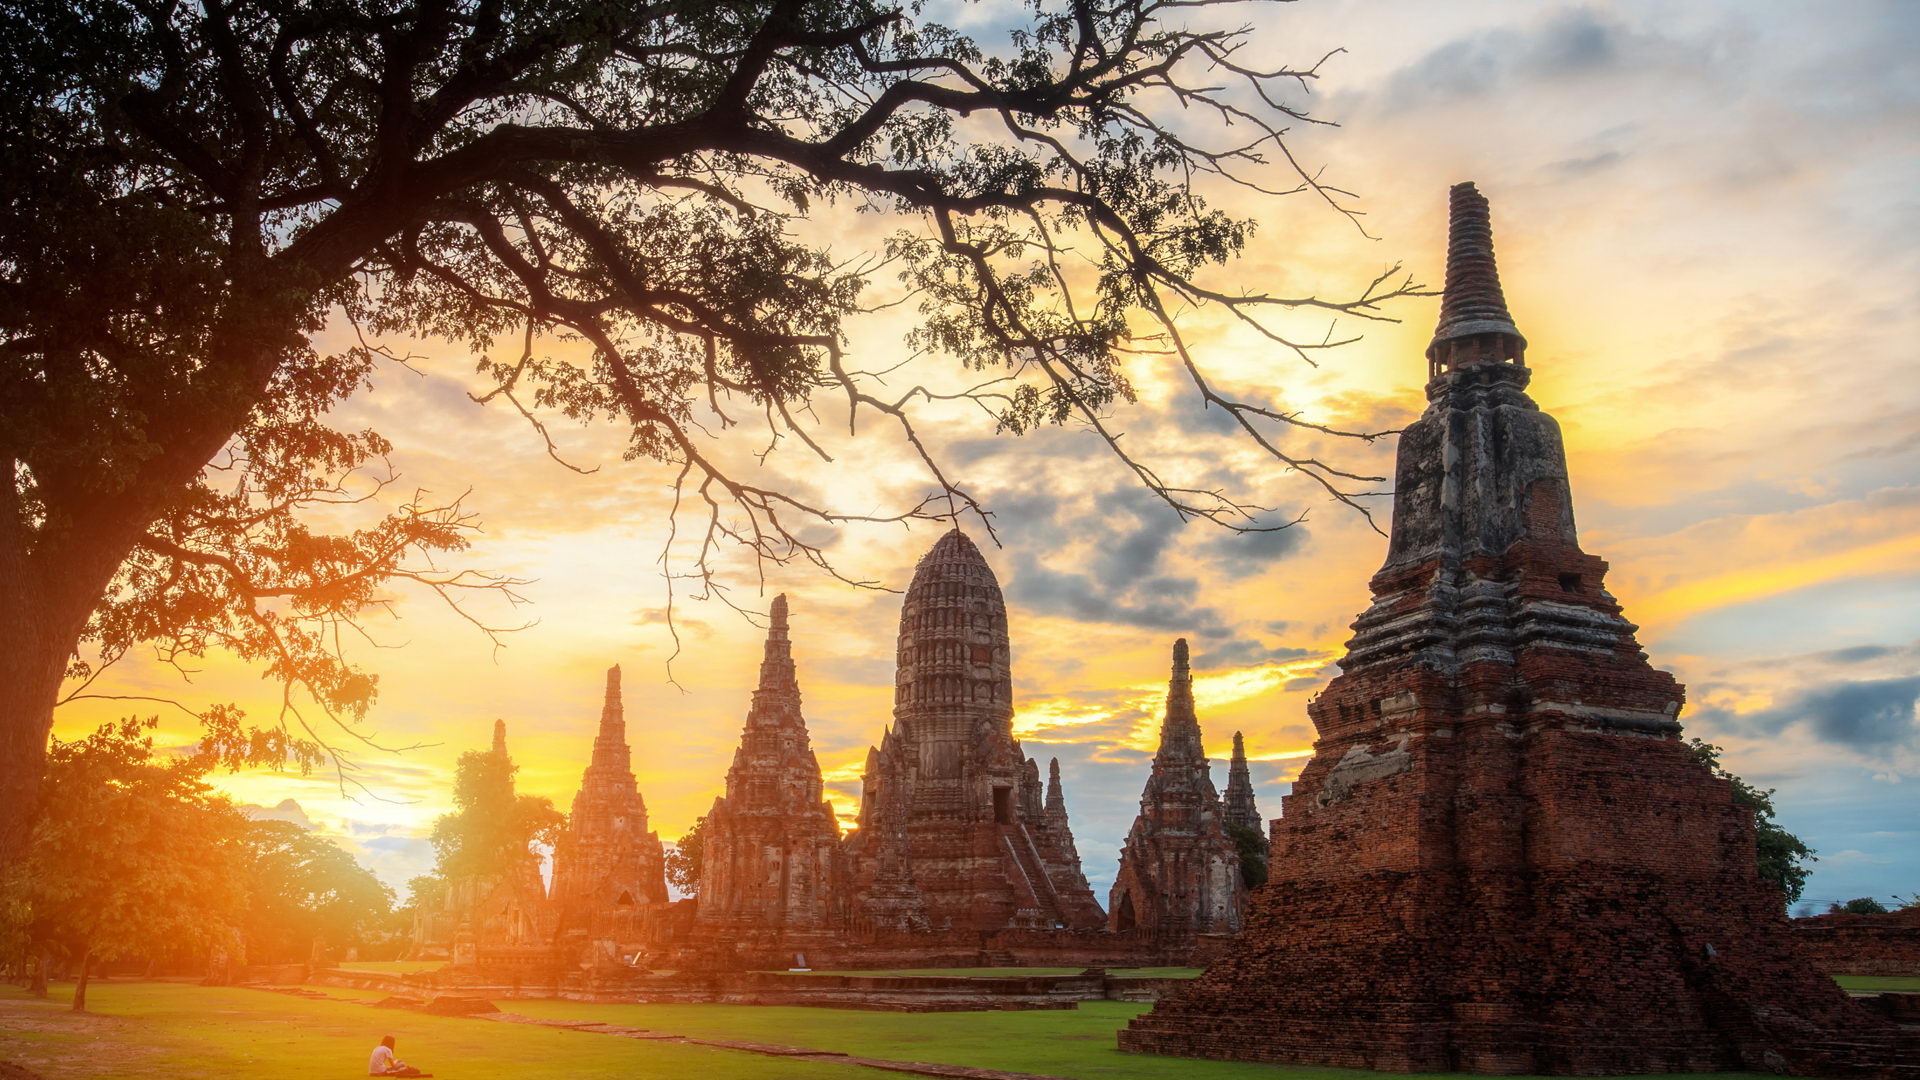 Itinerari Thailandia - Tour Thailandia classica